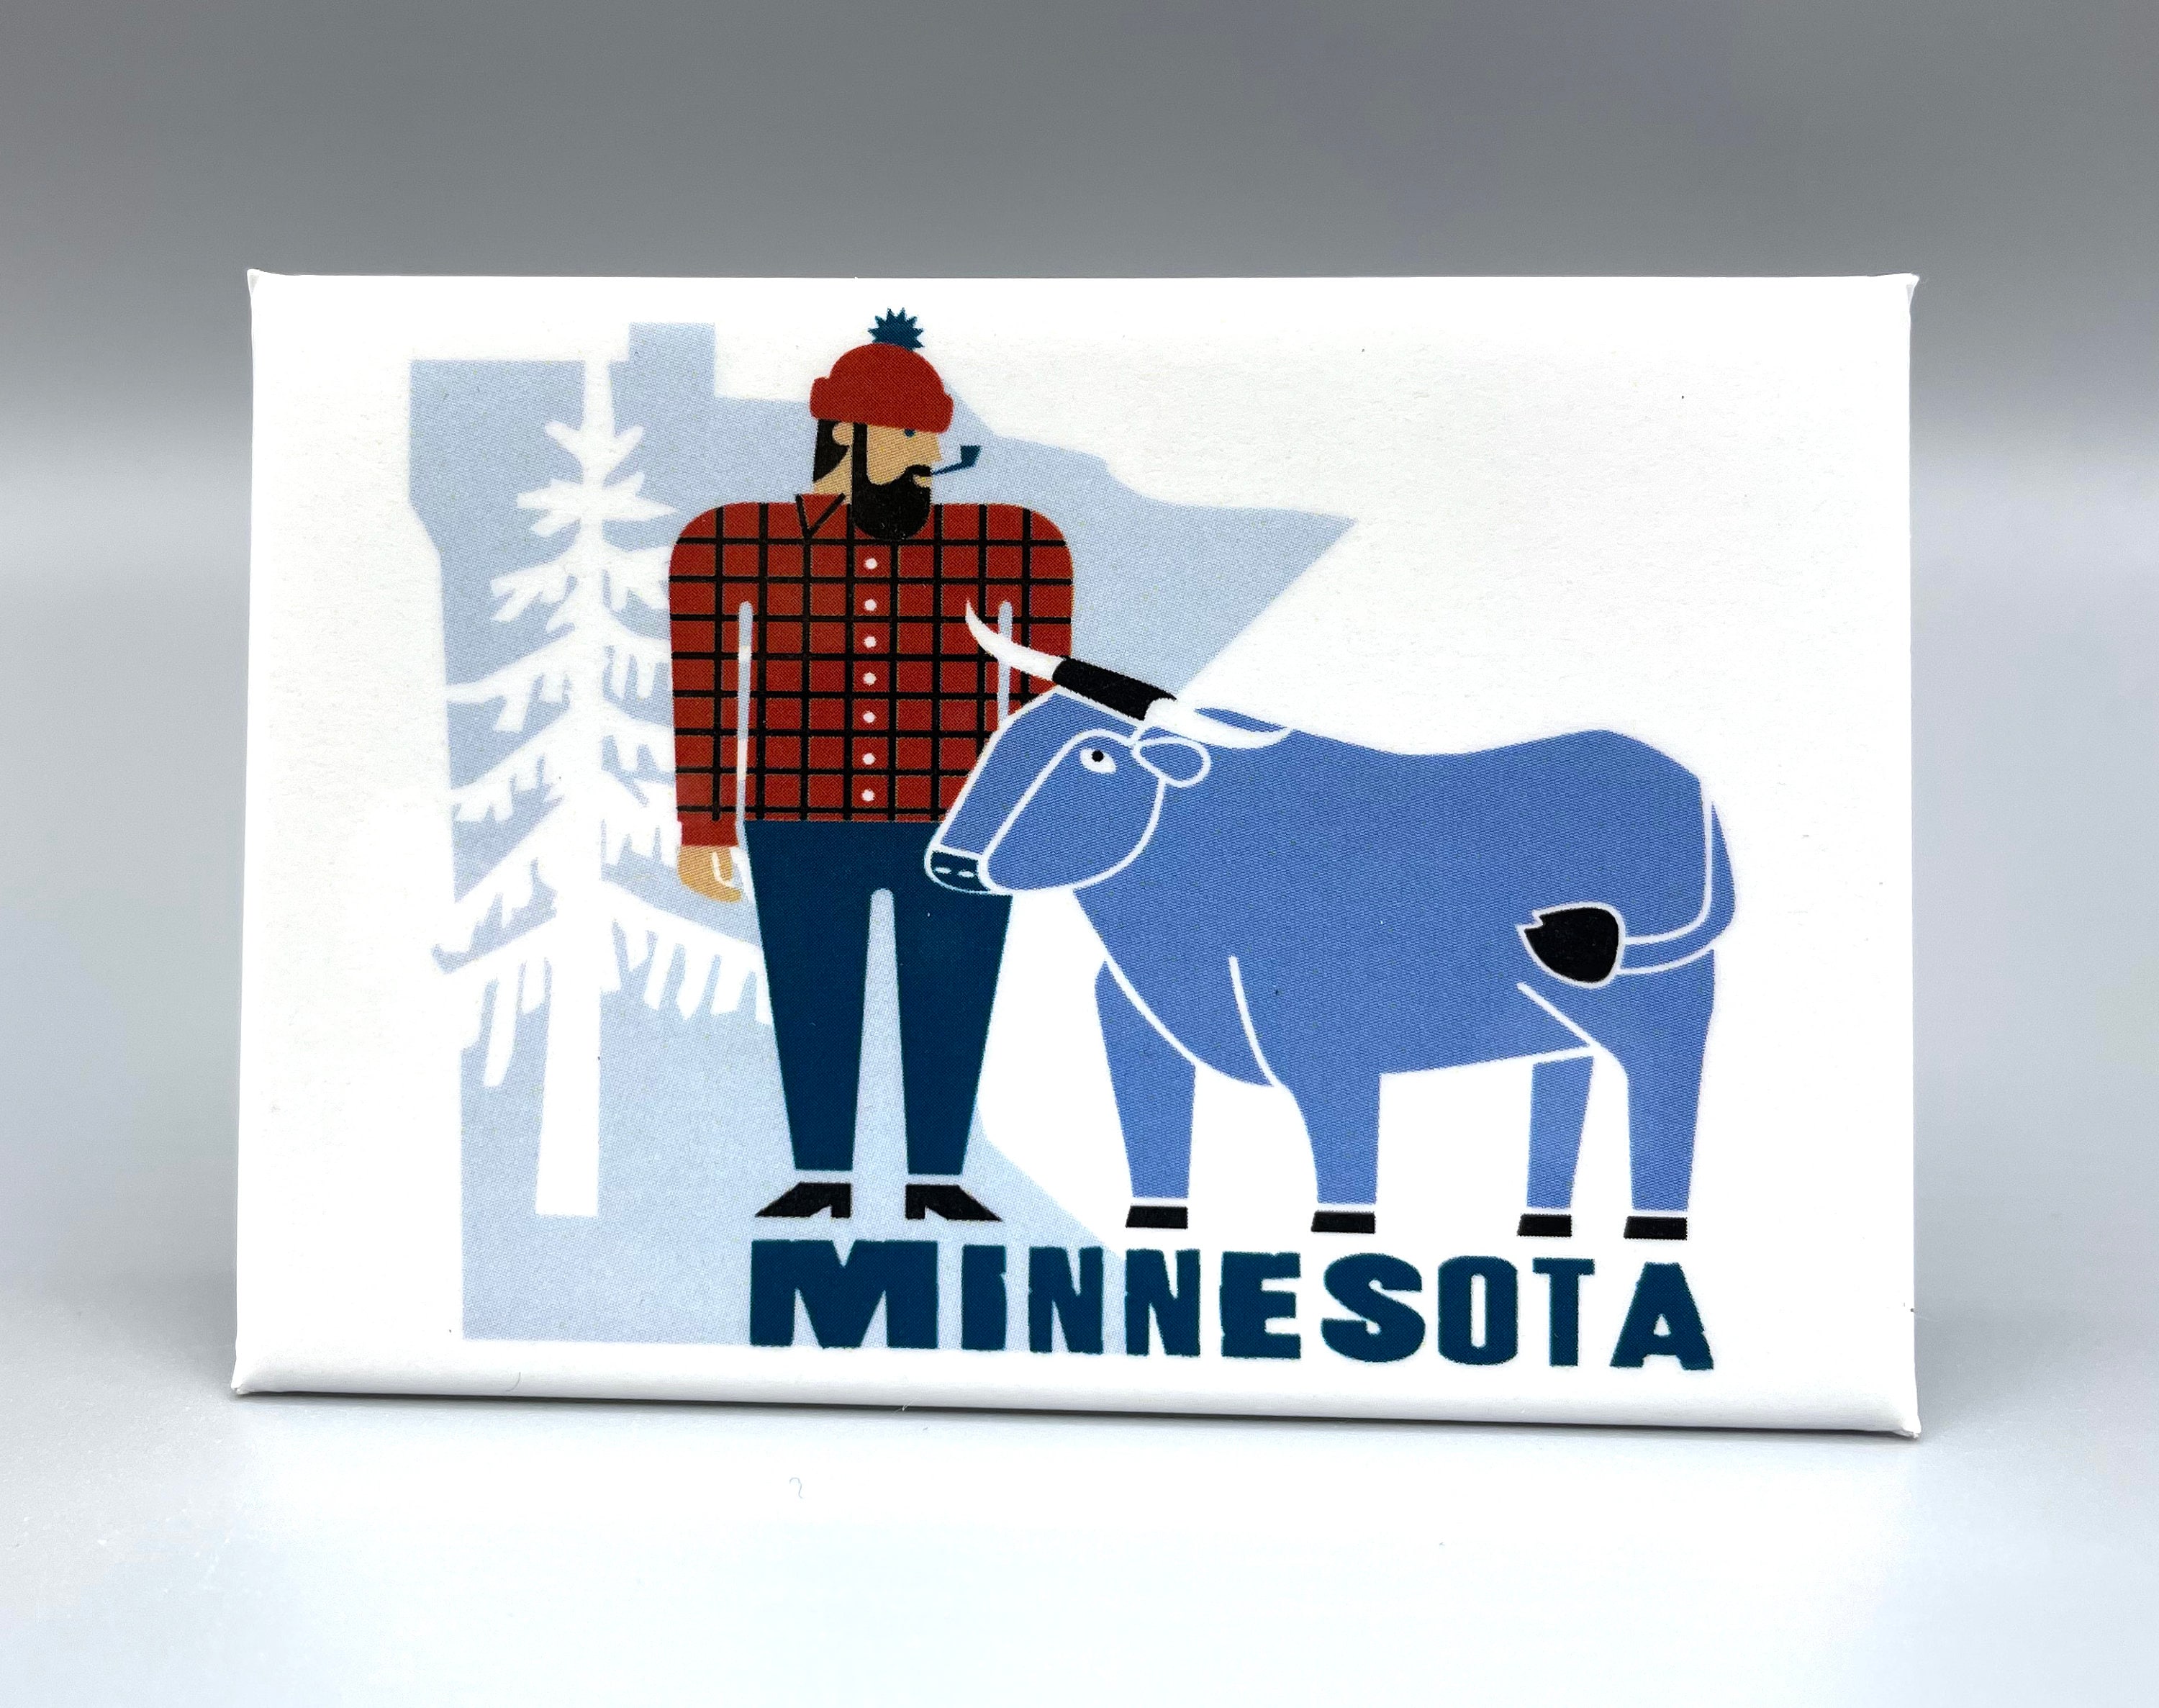 The Bunyan Minnesota Canvas Tote Bag – Minnesota Awesome